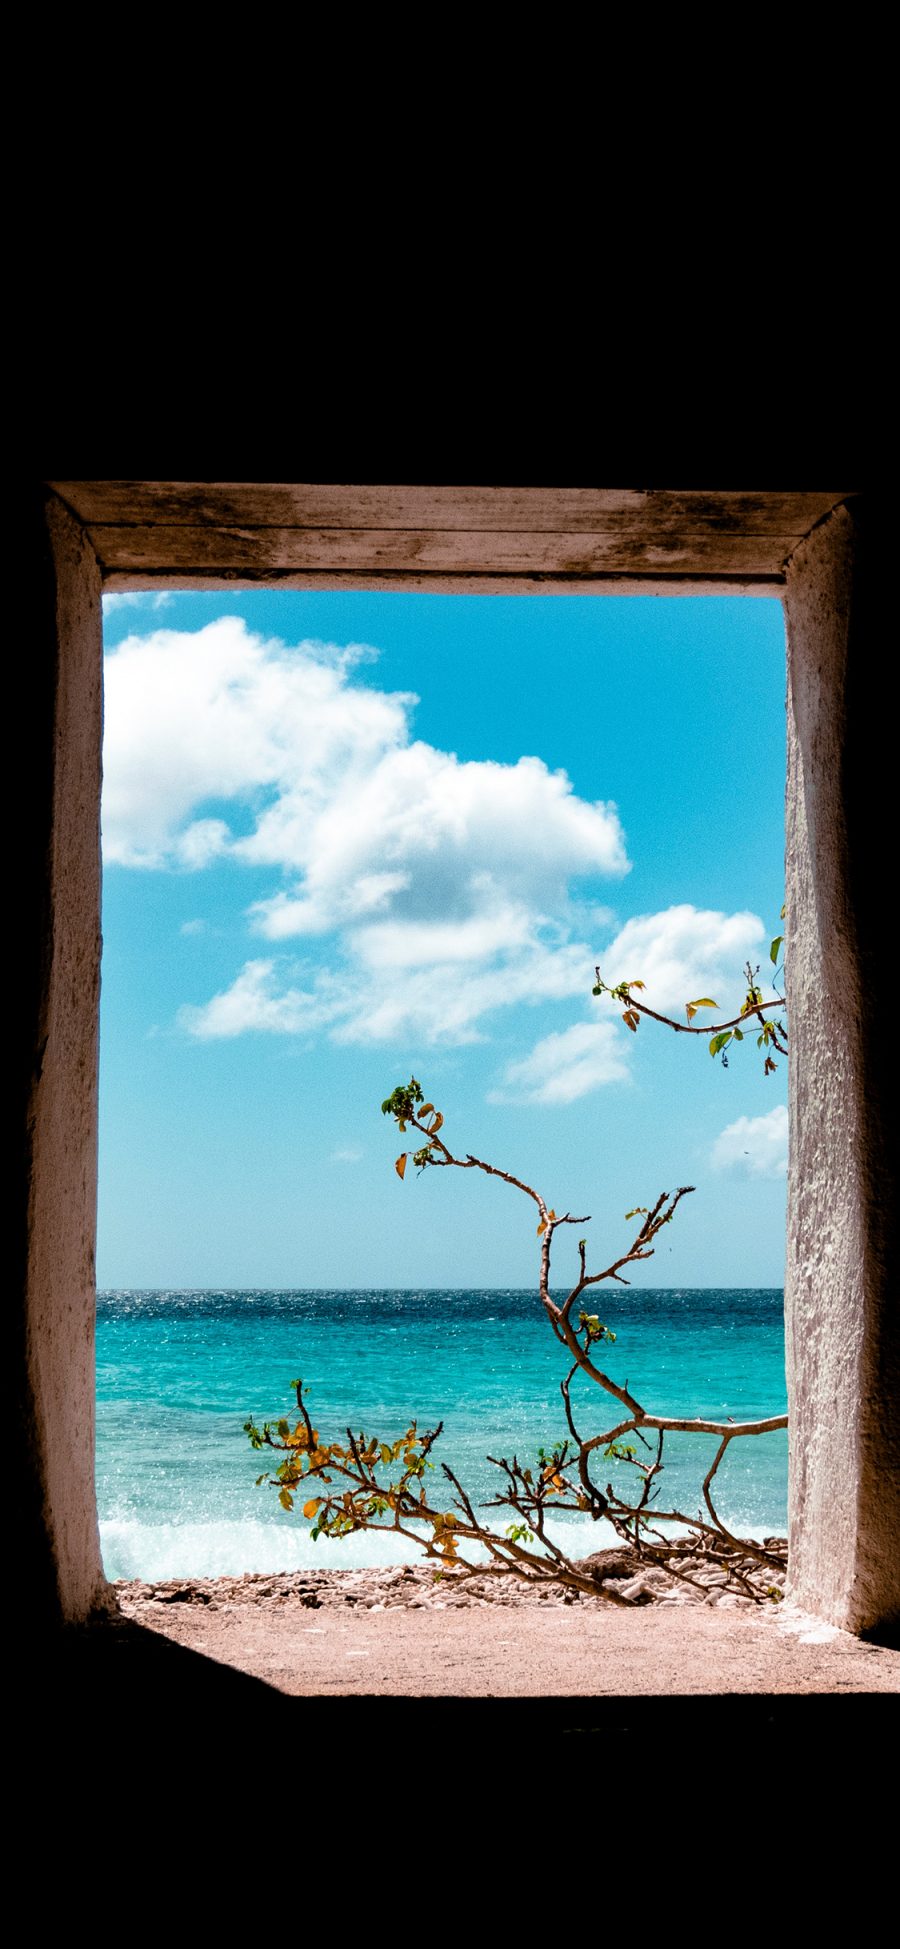 [2436×1125]窗户 海景 蓝天白云 树木 苹果手机壁纸图片